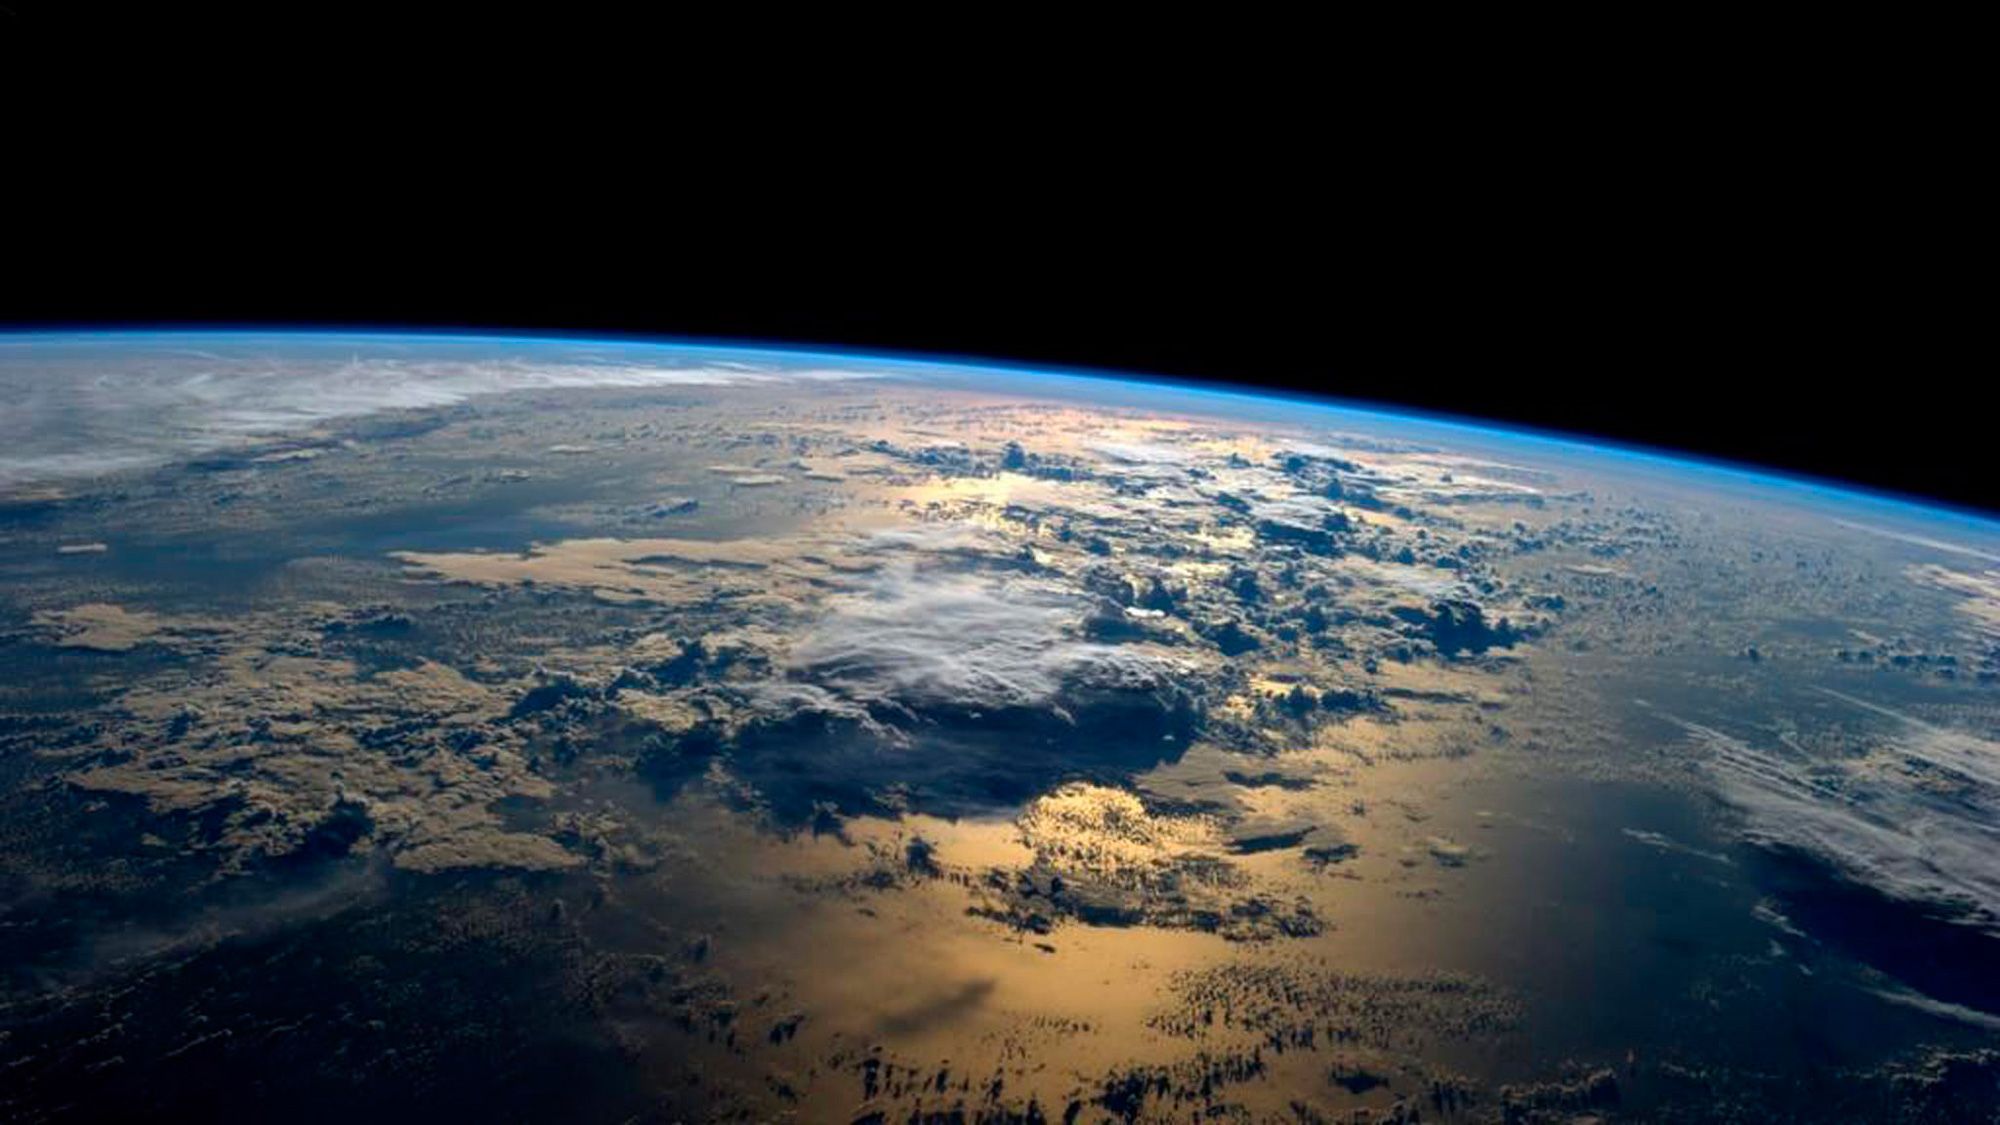  Weltraum Hintergrundbild 2000x1125. Ausstellung über den Weltraum mit überirdischer Bedeutung